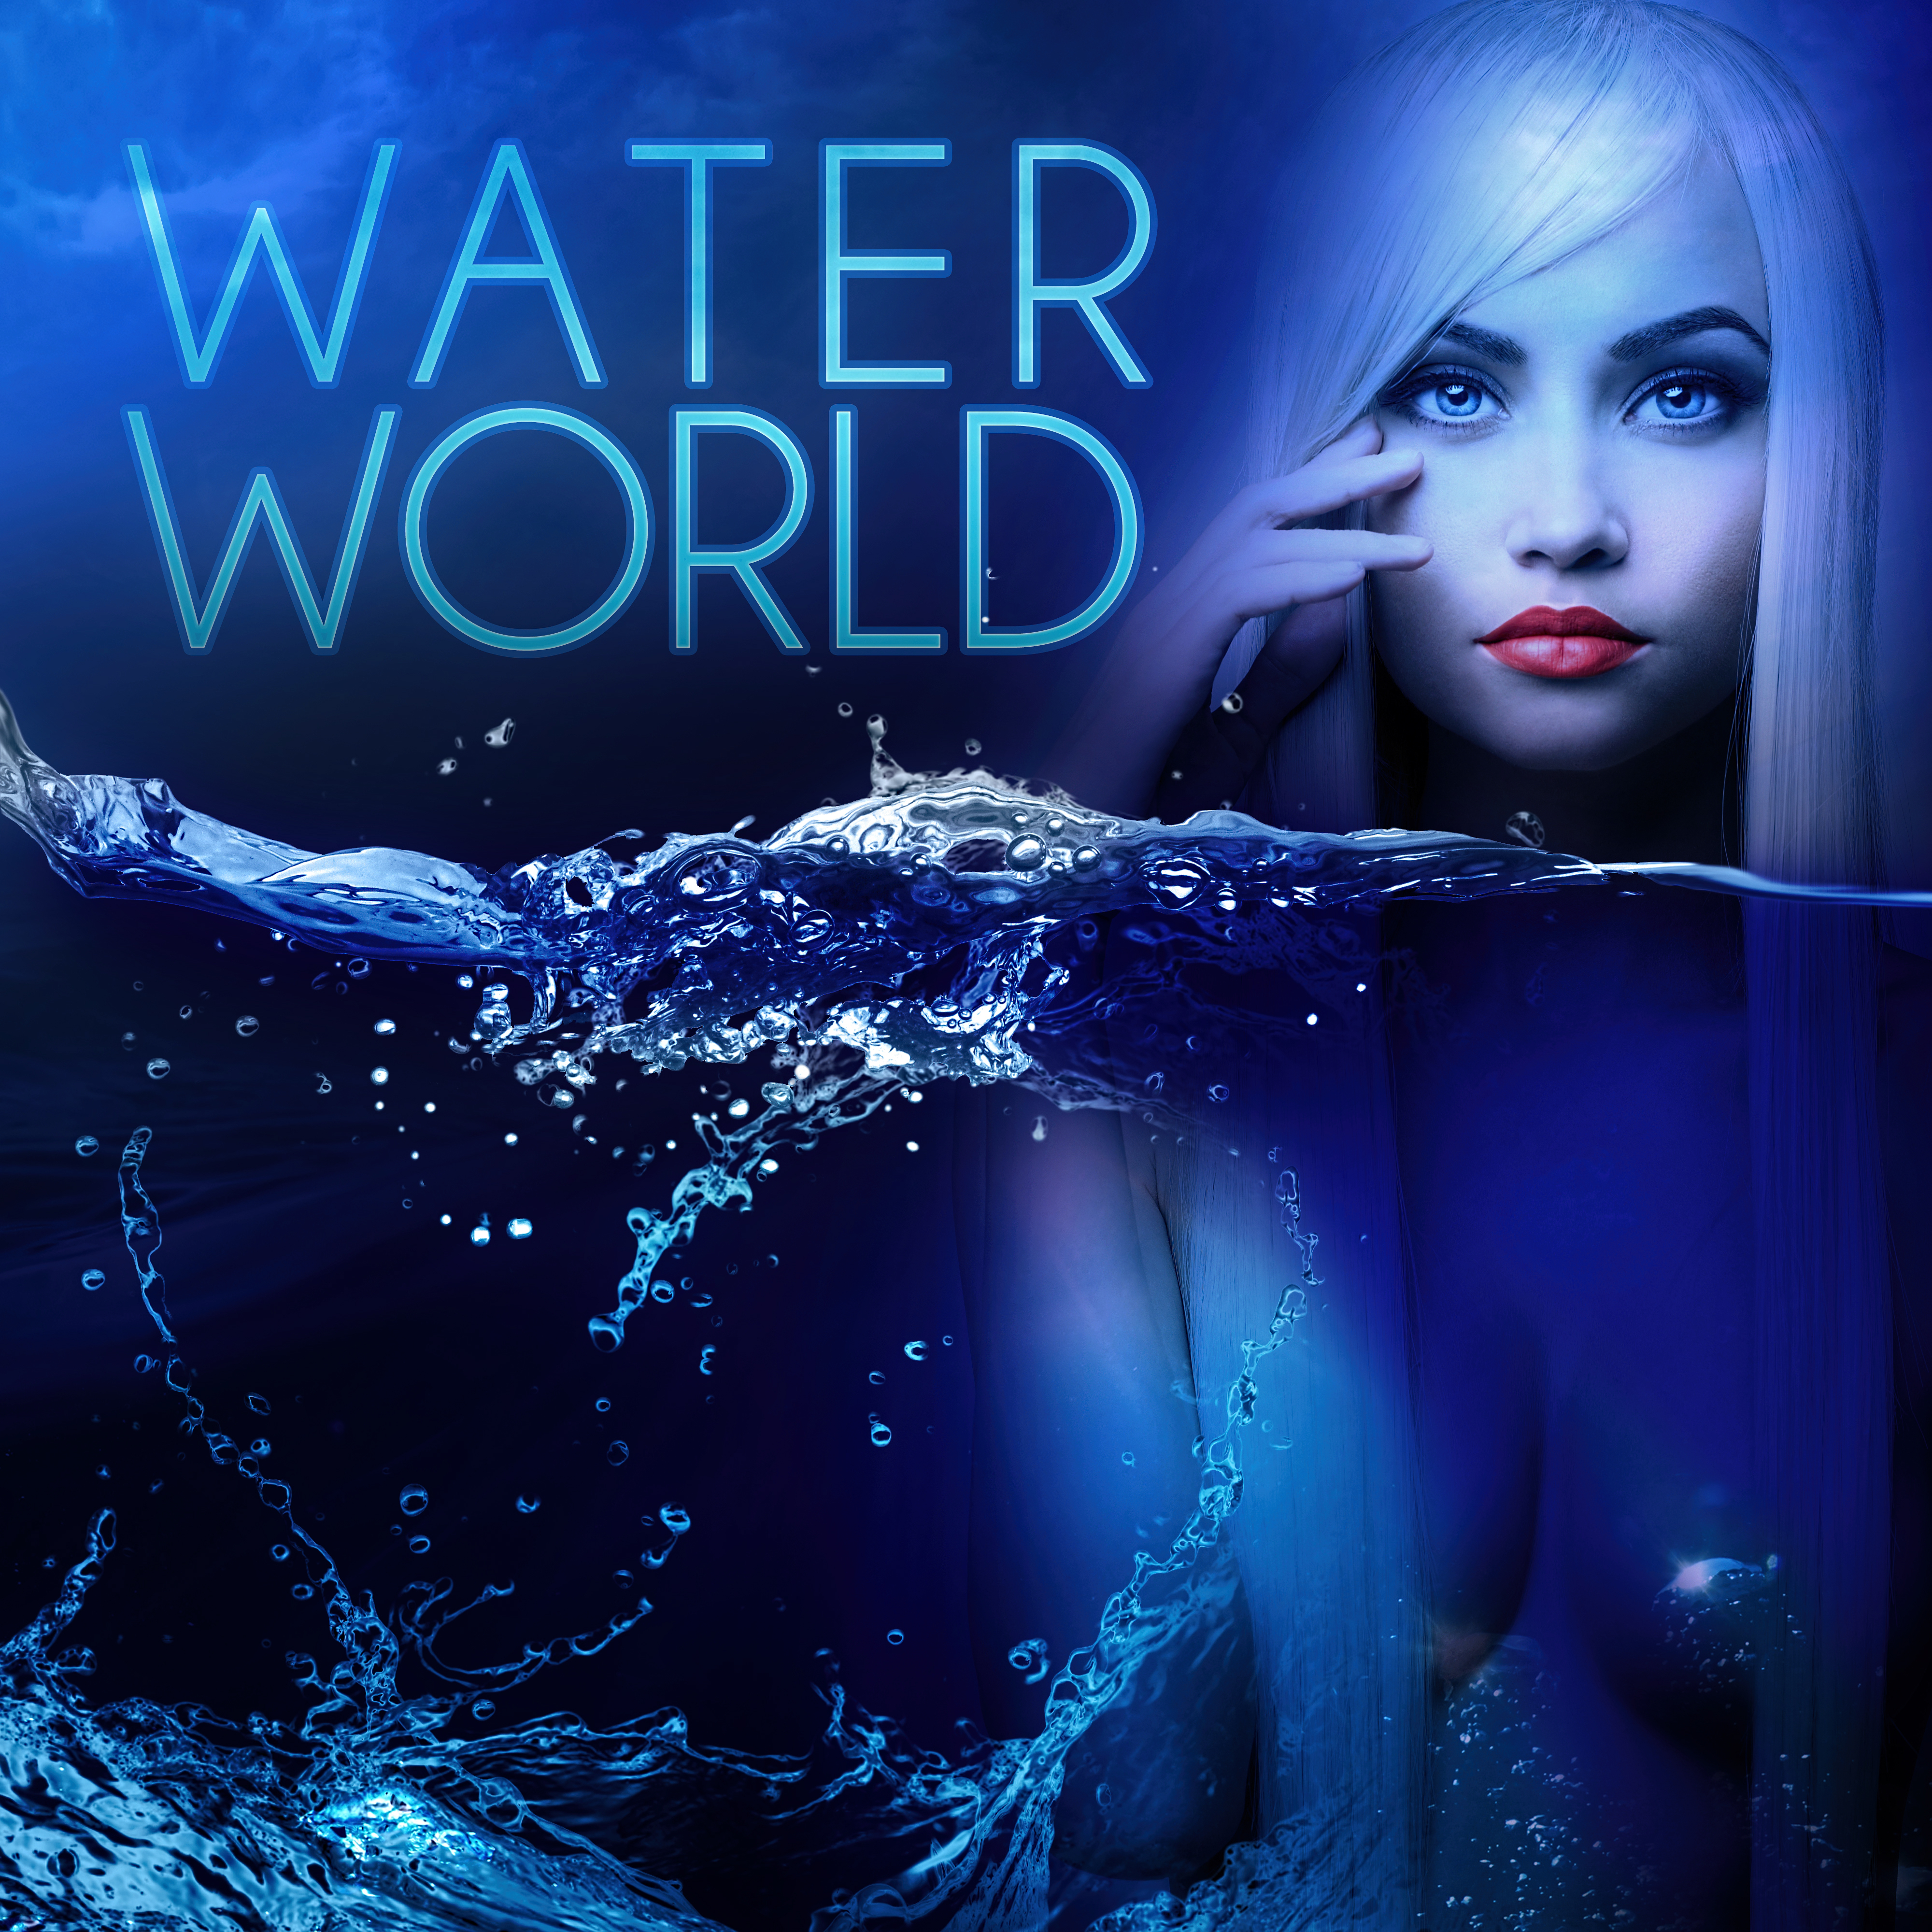 Water World – Relaxing Water Sounds for Deep Meditation, Awareness & Mindfulness, De-stress & Well Being, Relax & Fall Asleep, Sound Masking